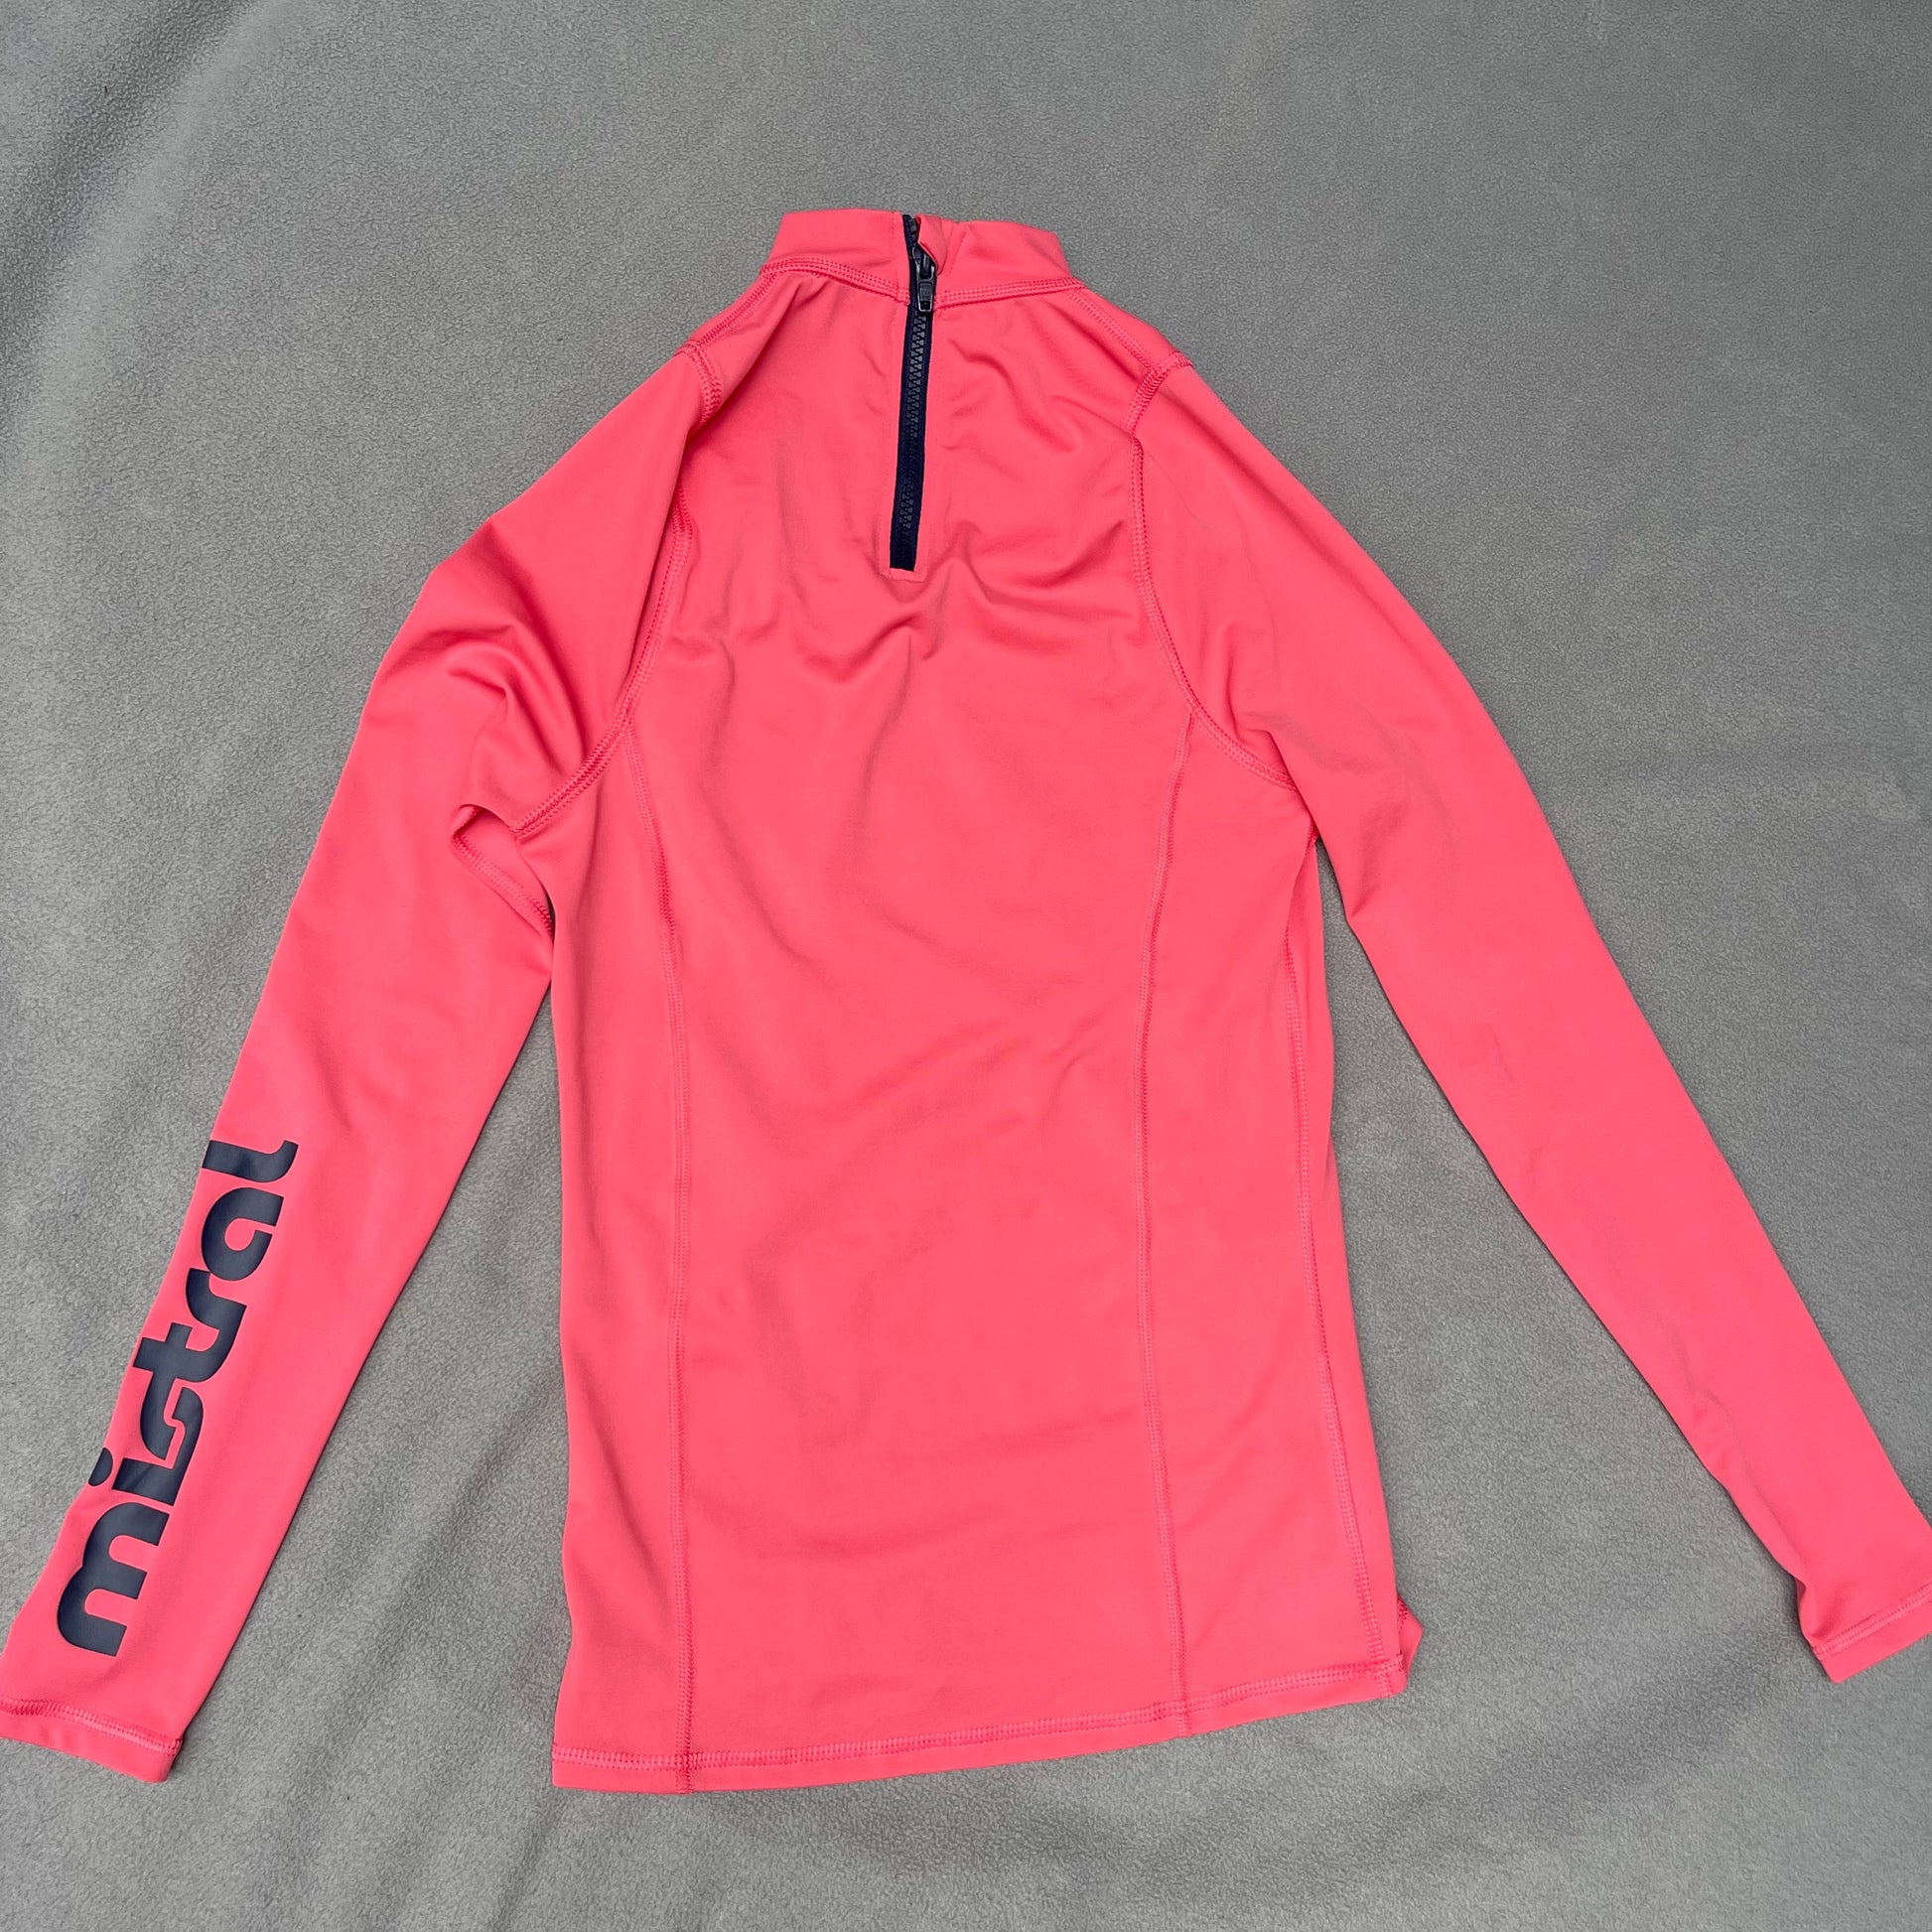 Surf-Shirt XS/S UV-Schutz Badeshirt Damen pink neu - wanderlich.com